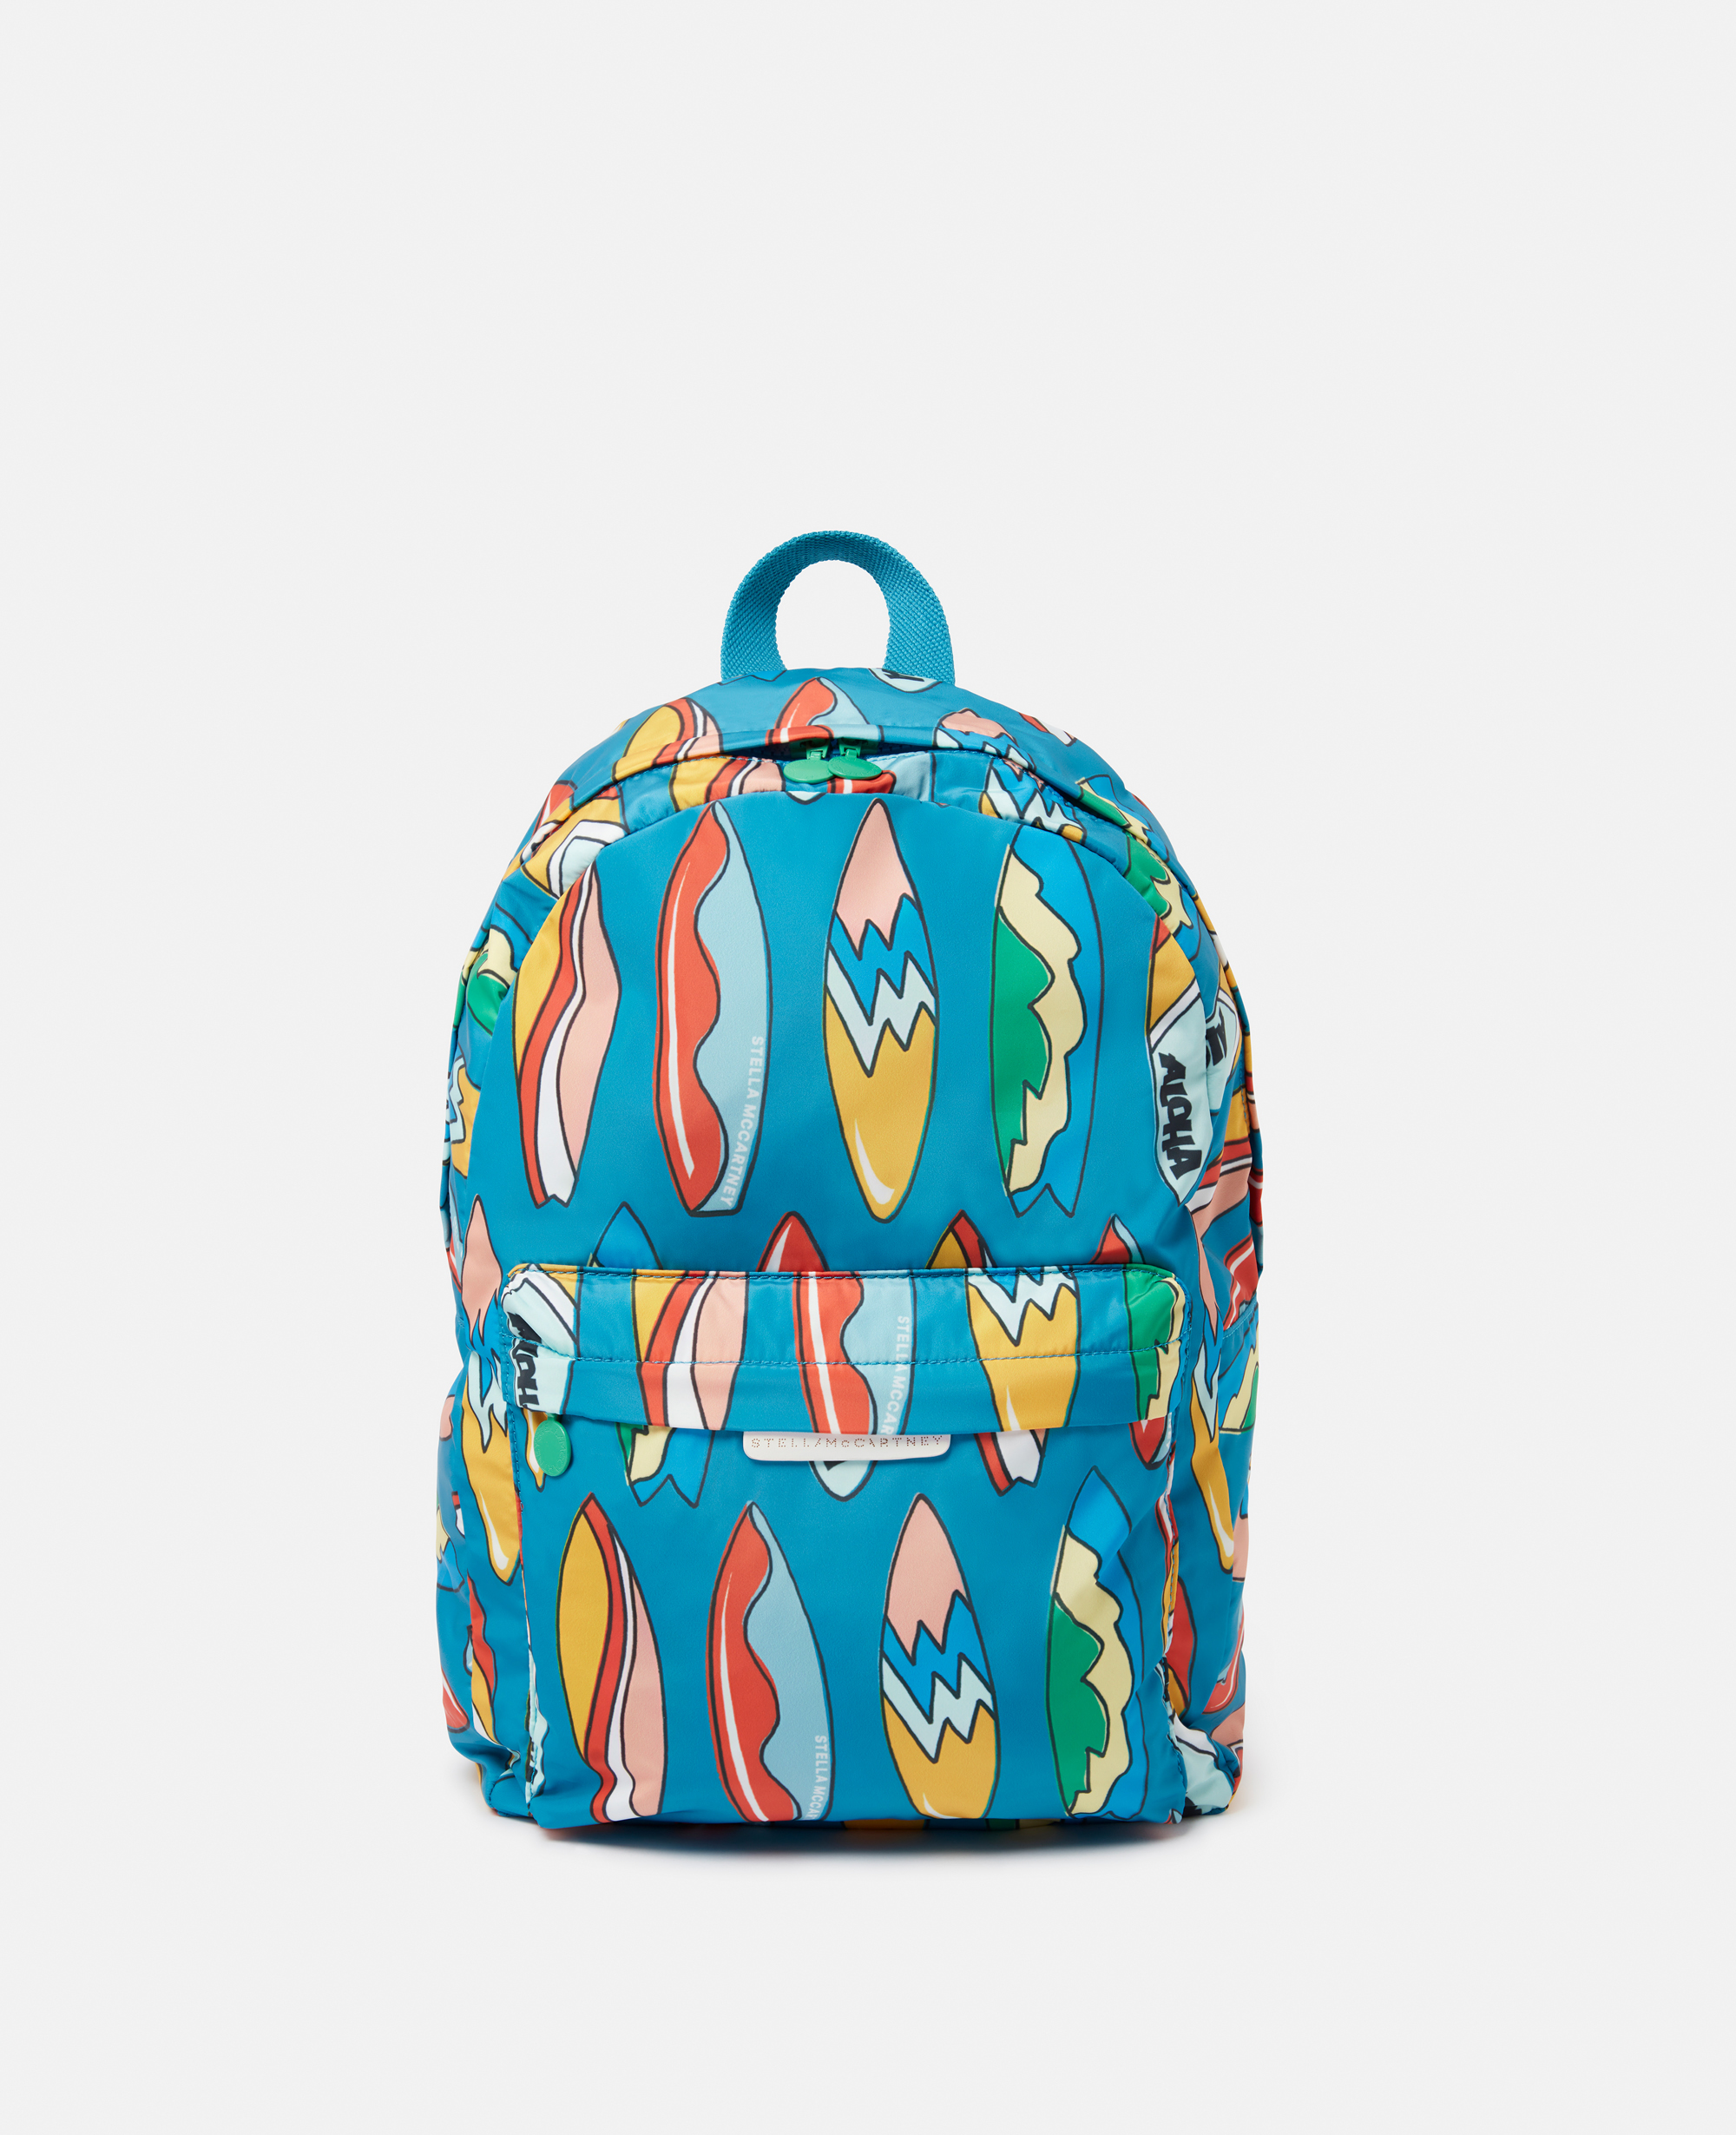 stella mccartney - sac à dos à imprimé planches de surf, femme, bleu multicolore